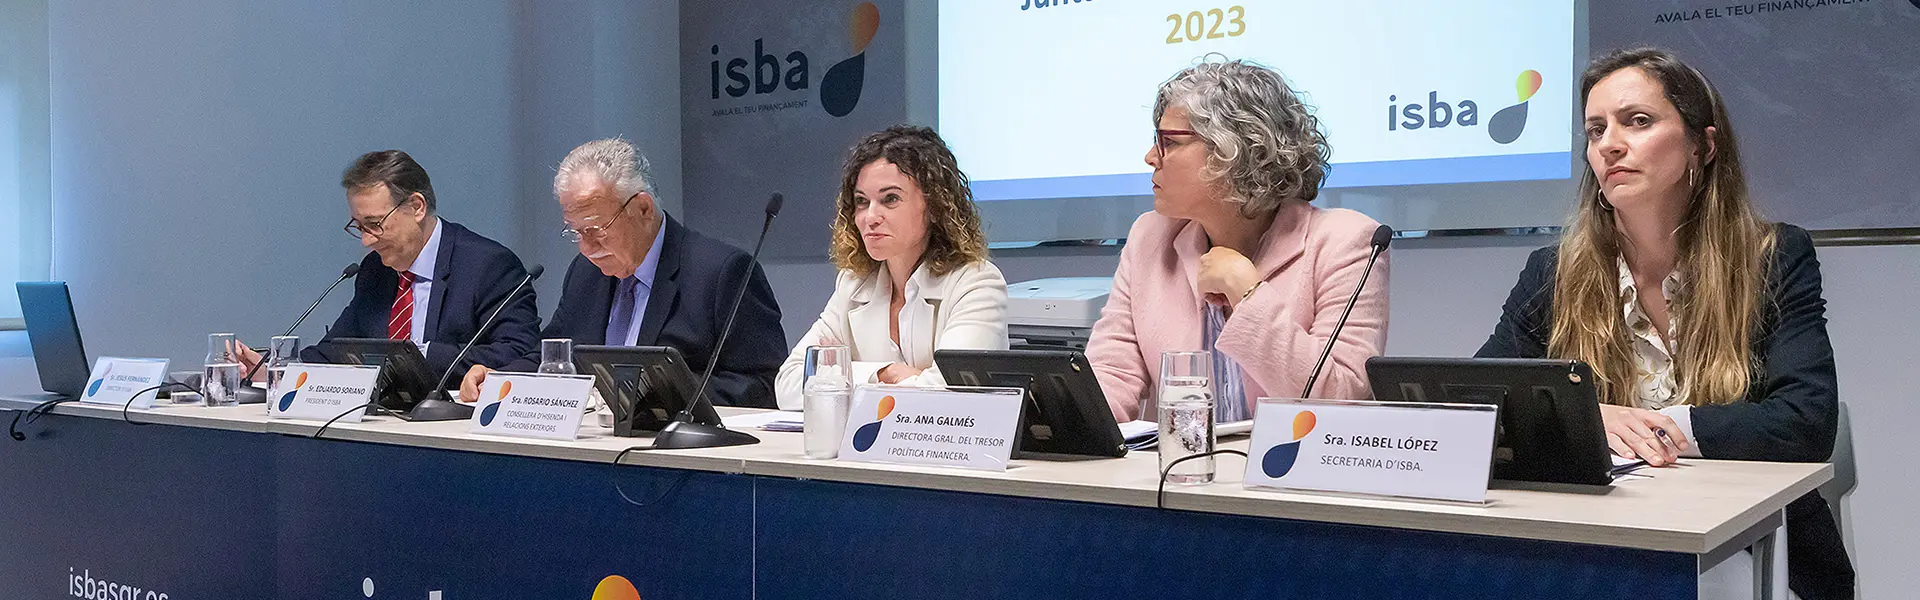 ISBA concede más de 48 millones de euros en créditos a casi 500 empresas y autónomos durante 2023 ultimas noticias cesgar web